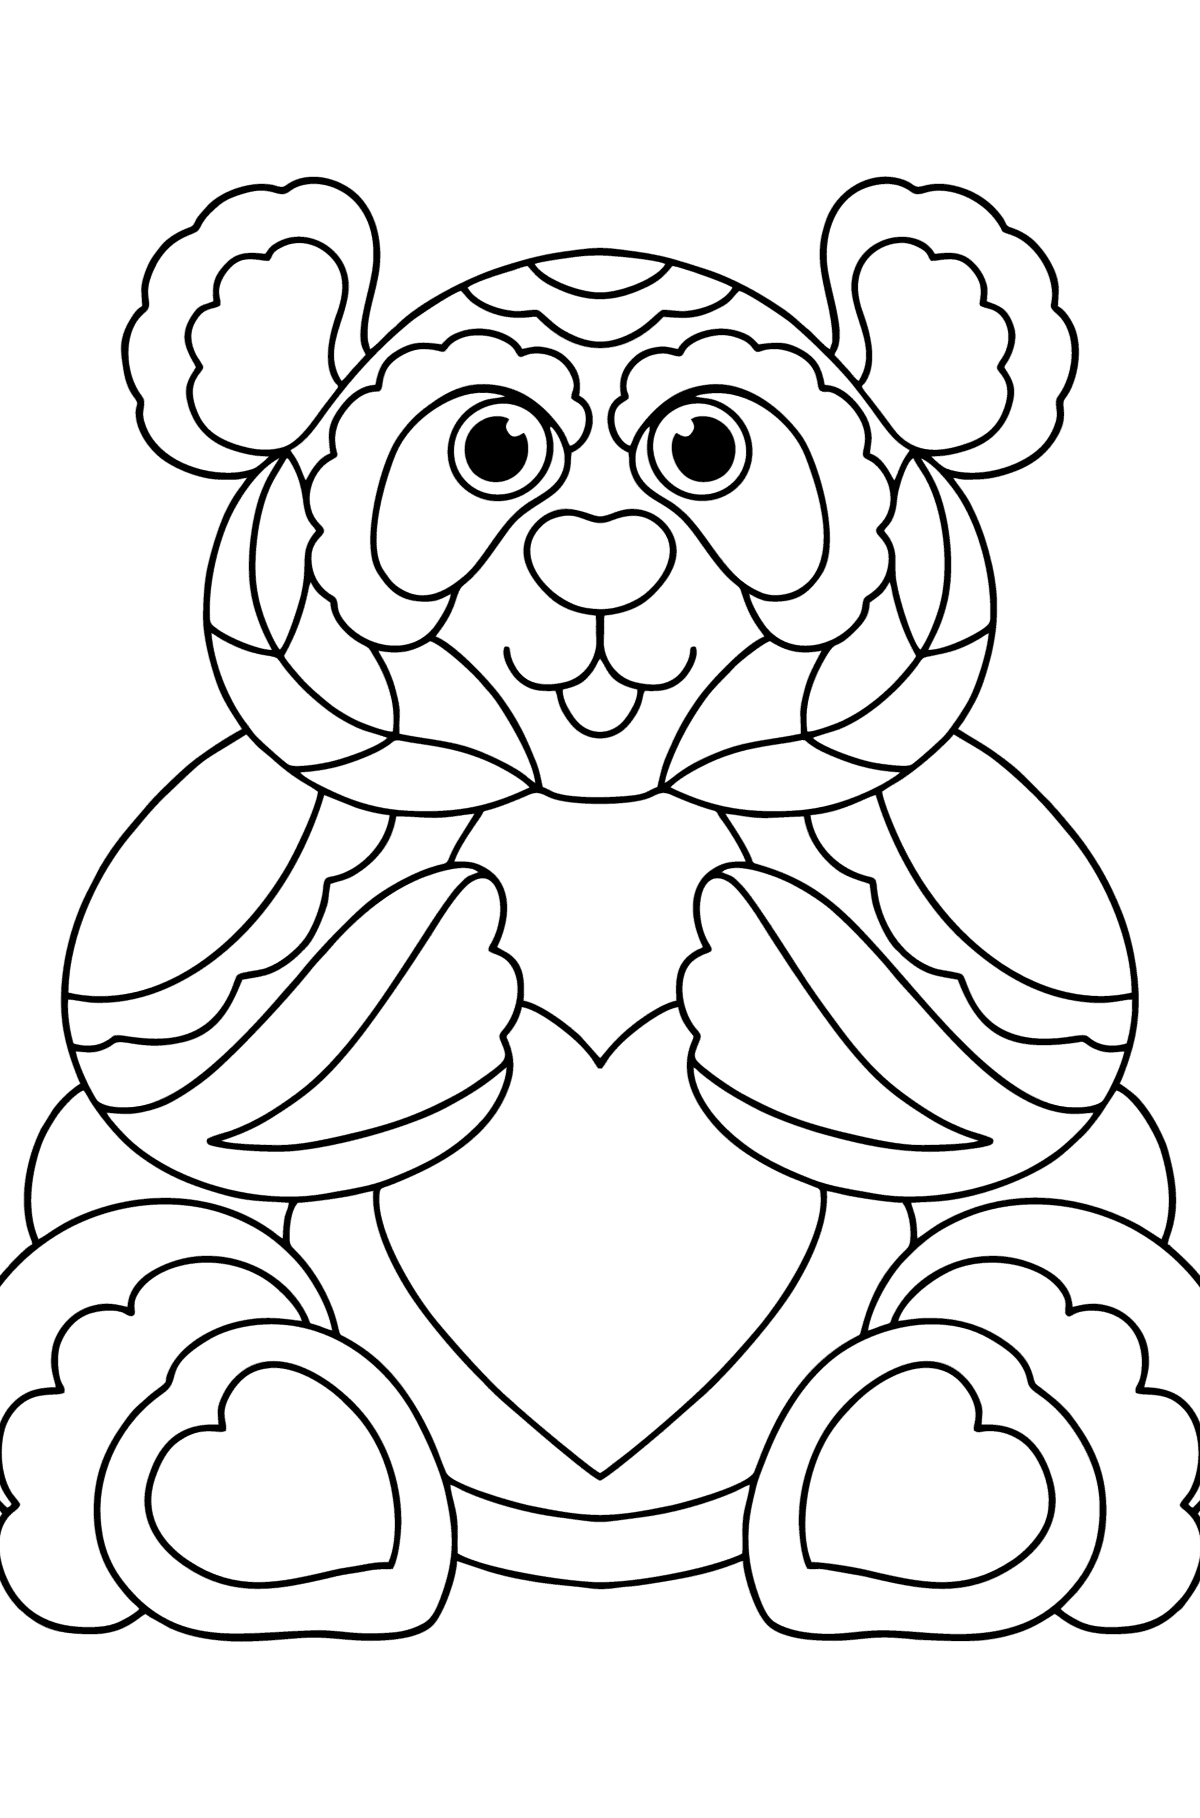 Tegning til fargelegging anti-stress panda - Tegninger til fargelegging for barn